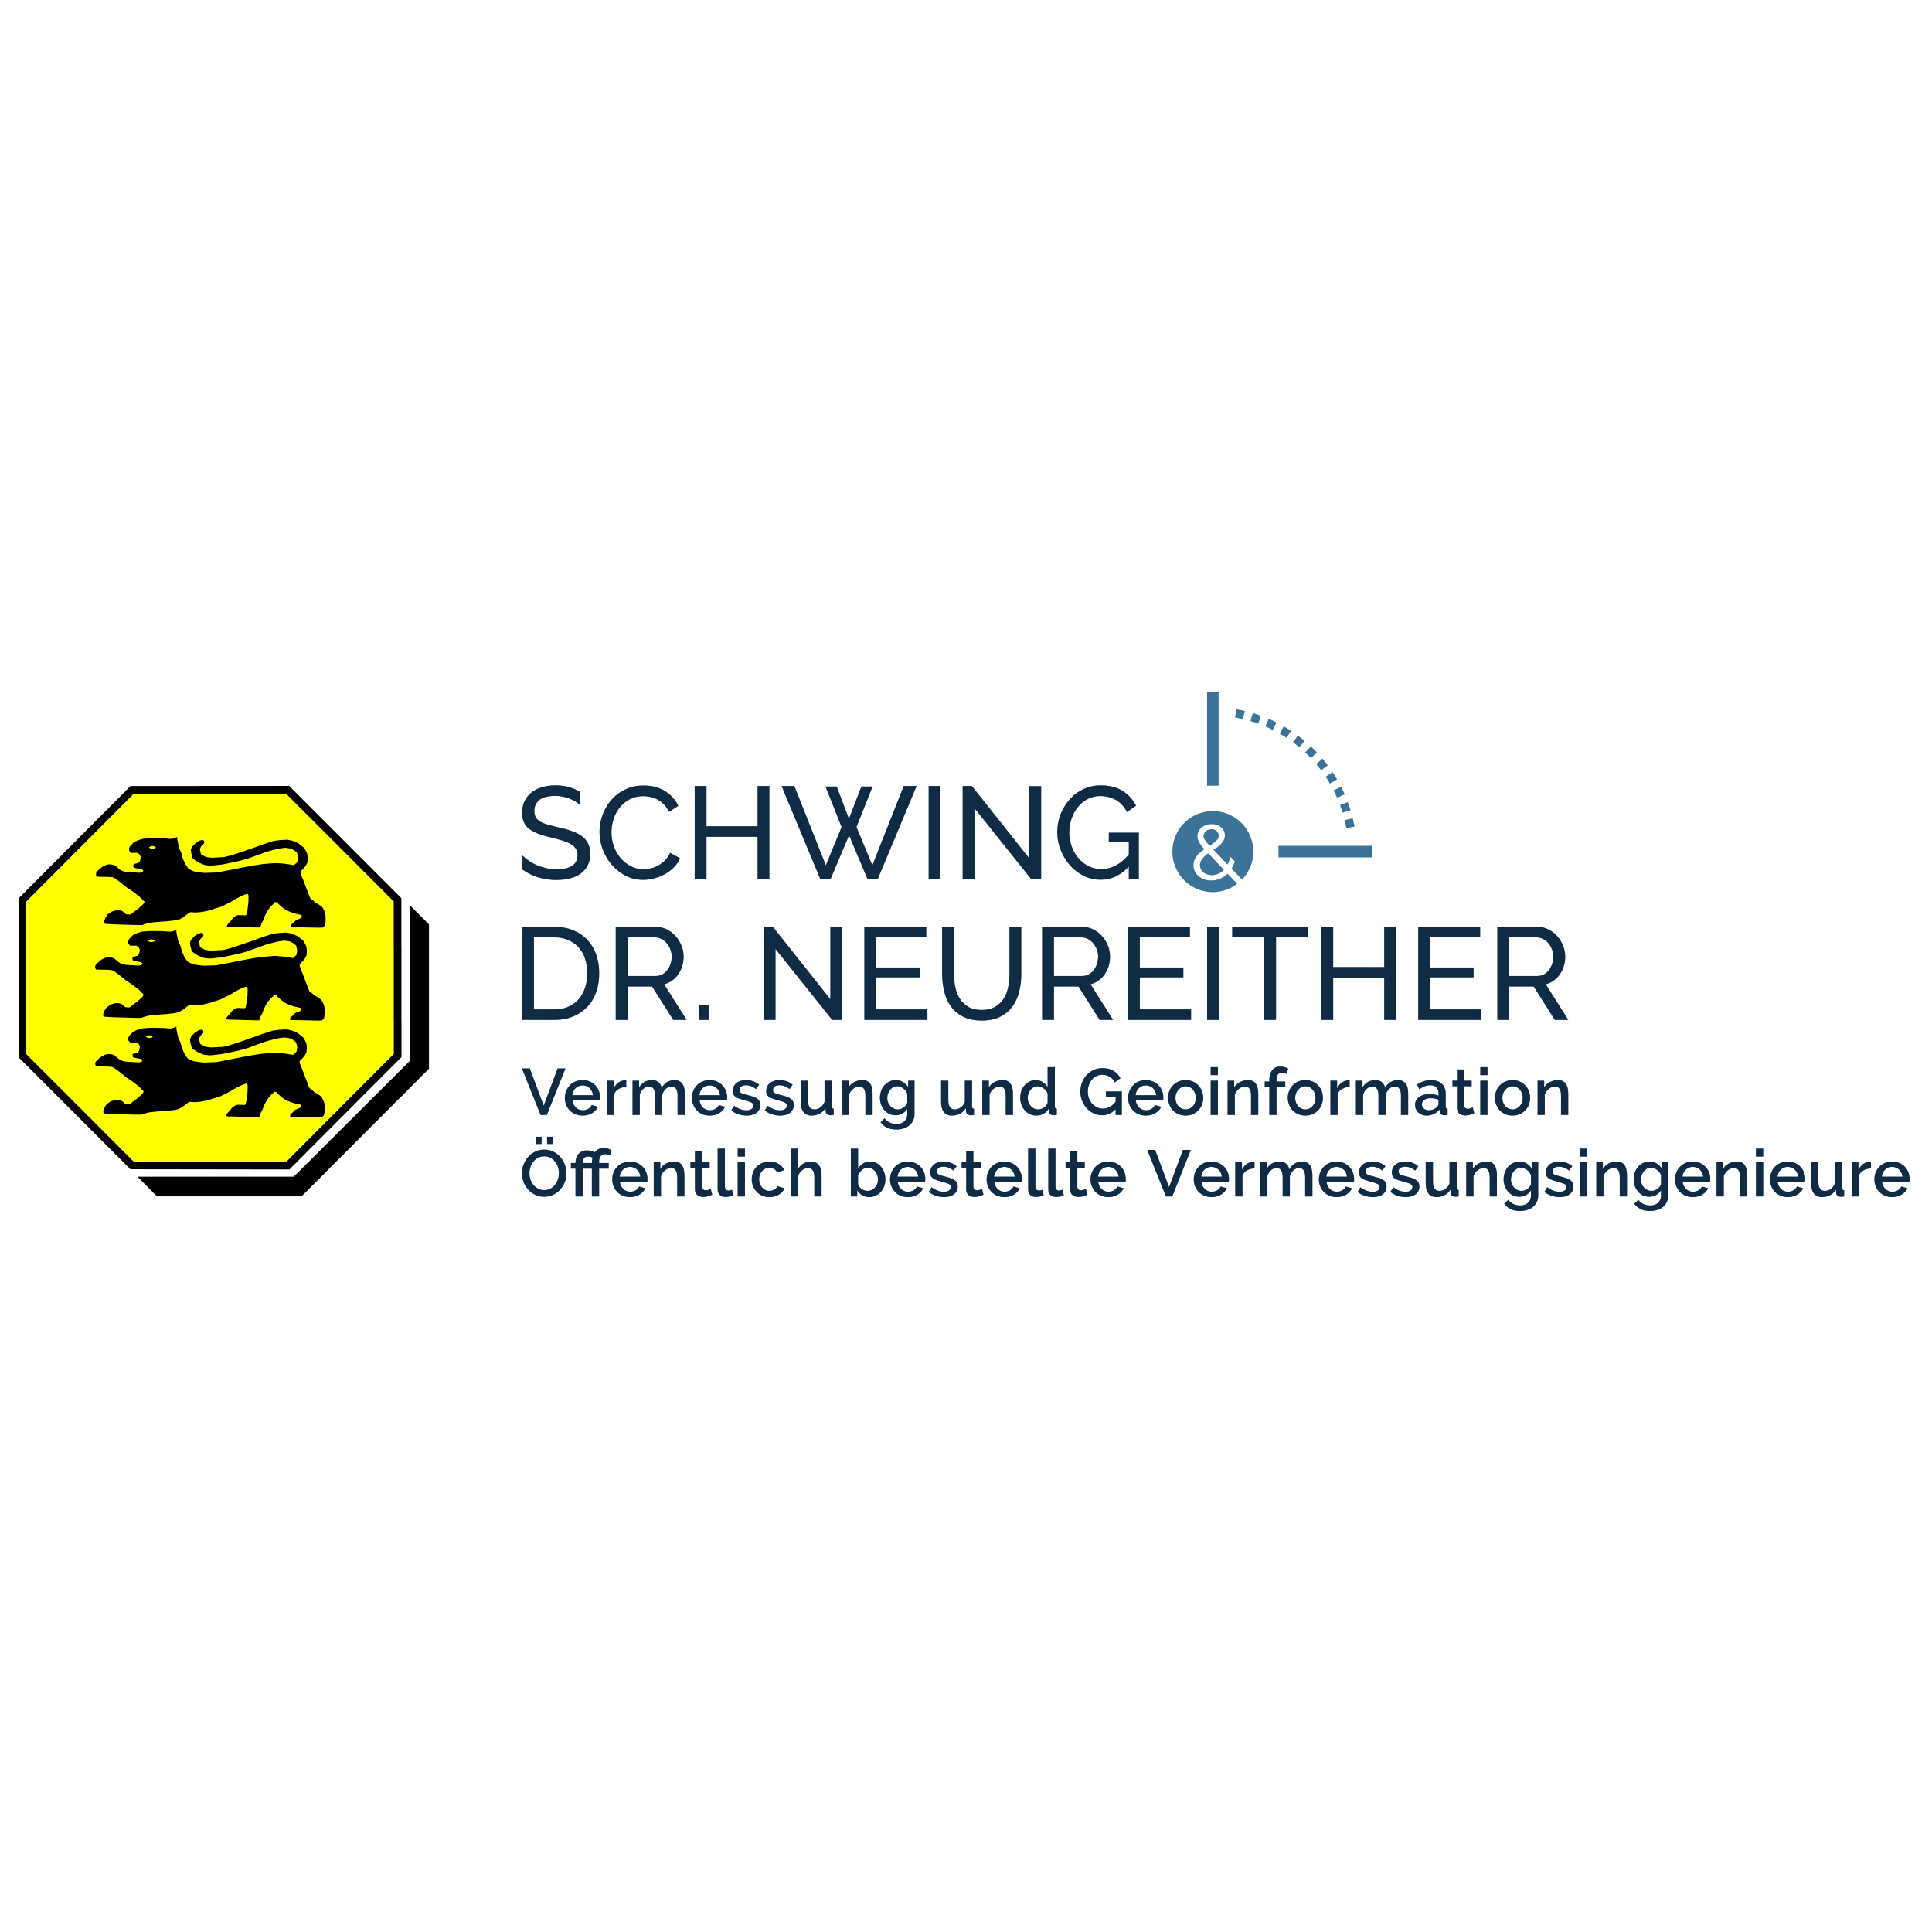 Vermessungsbüro Schwing & Dr. Neureither Logo